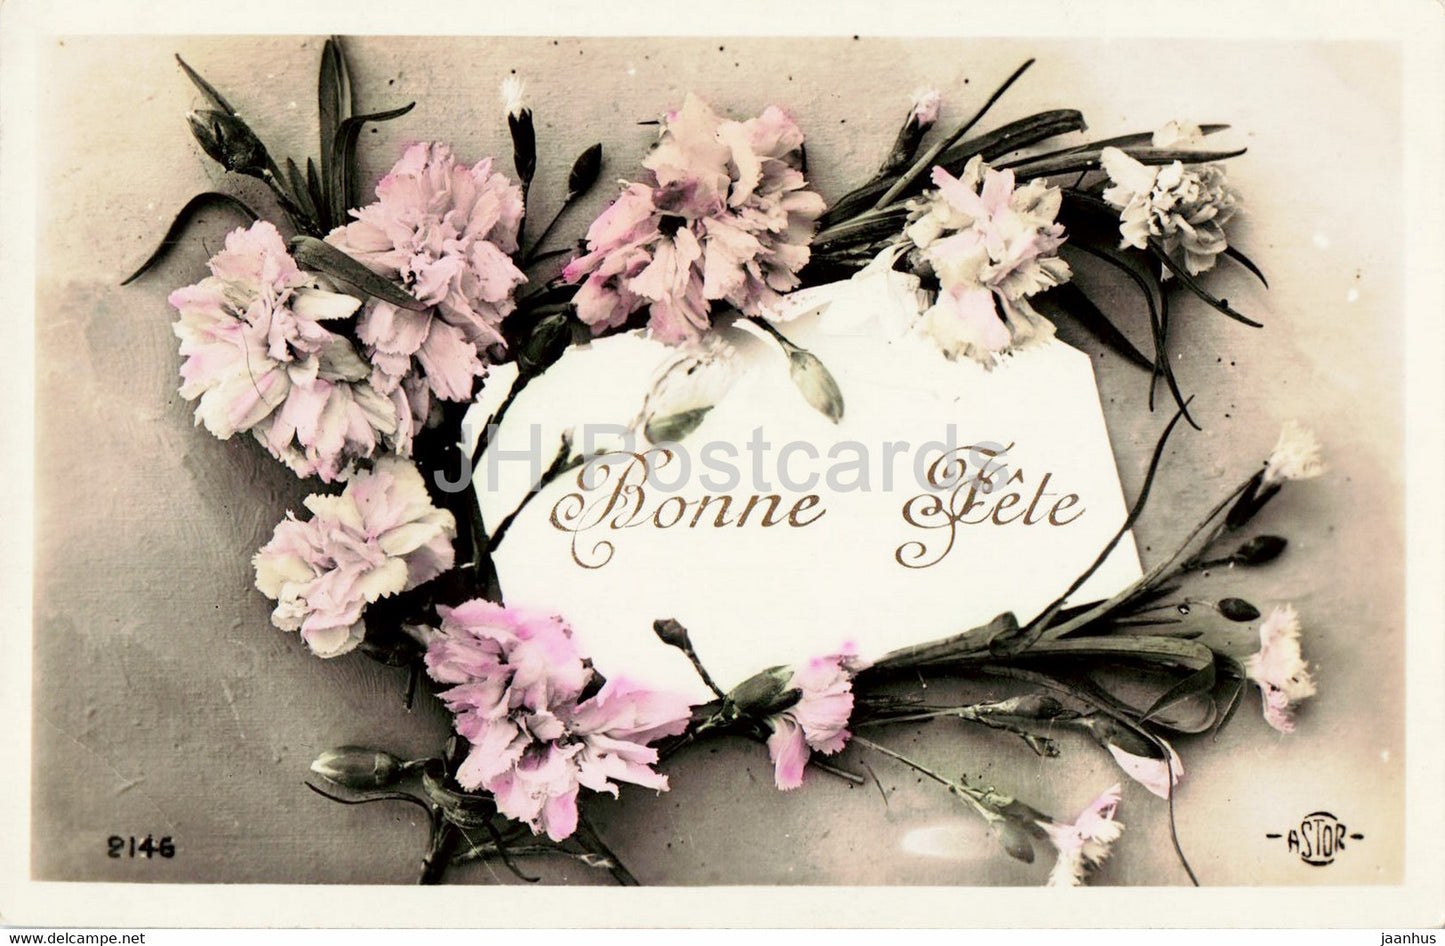 Greeting Card - Bonne Fete - flowers - carnation - 2146 - ASTOR - old postcard - France - used - JH Postcards